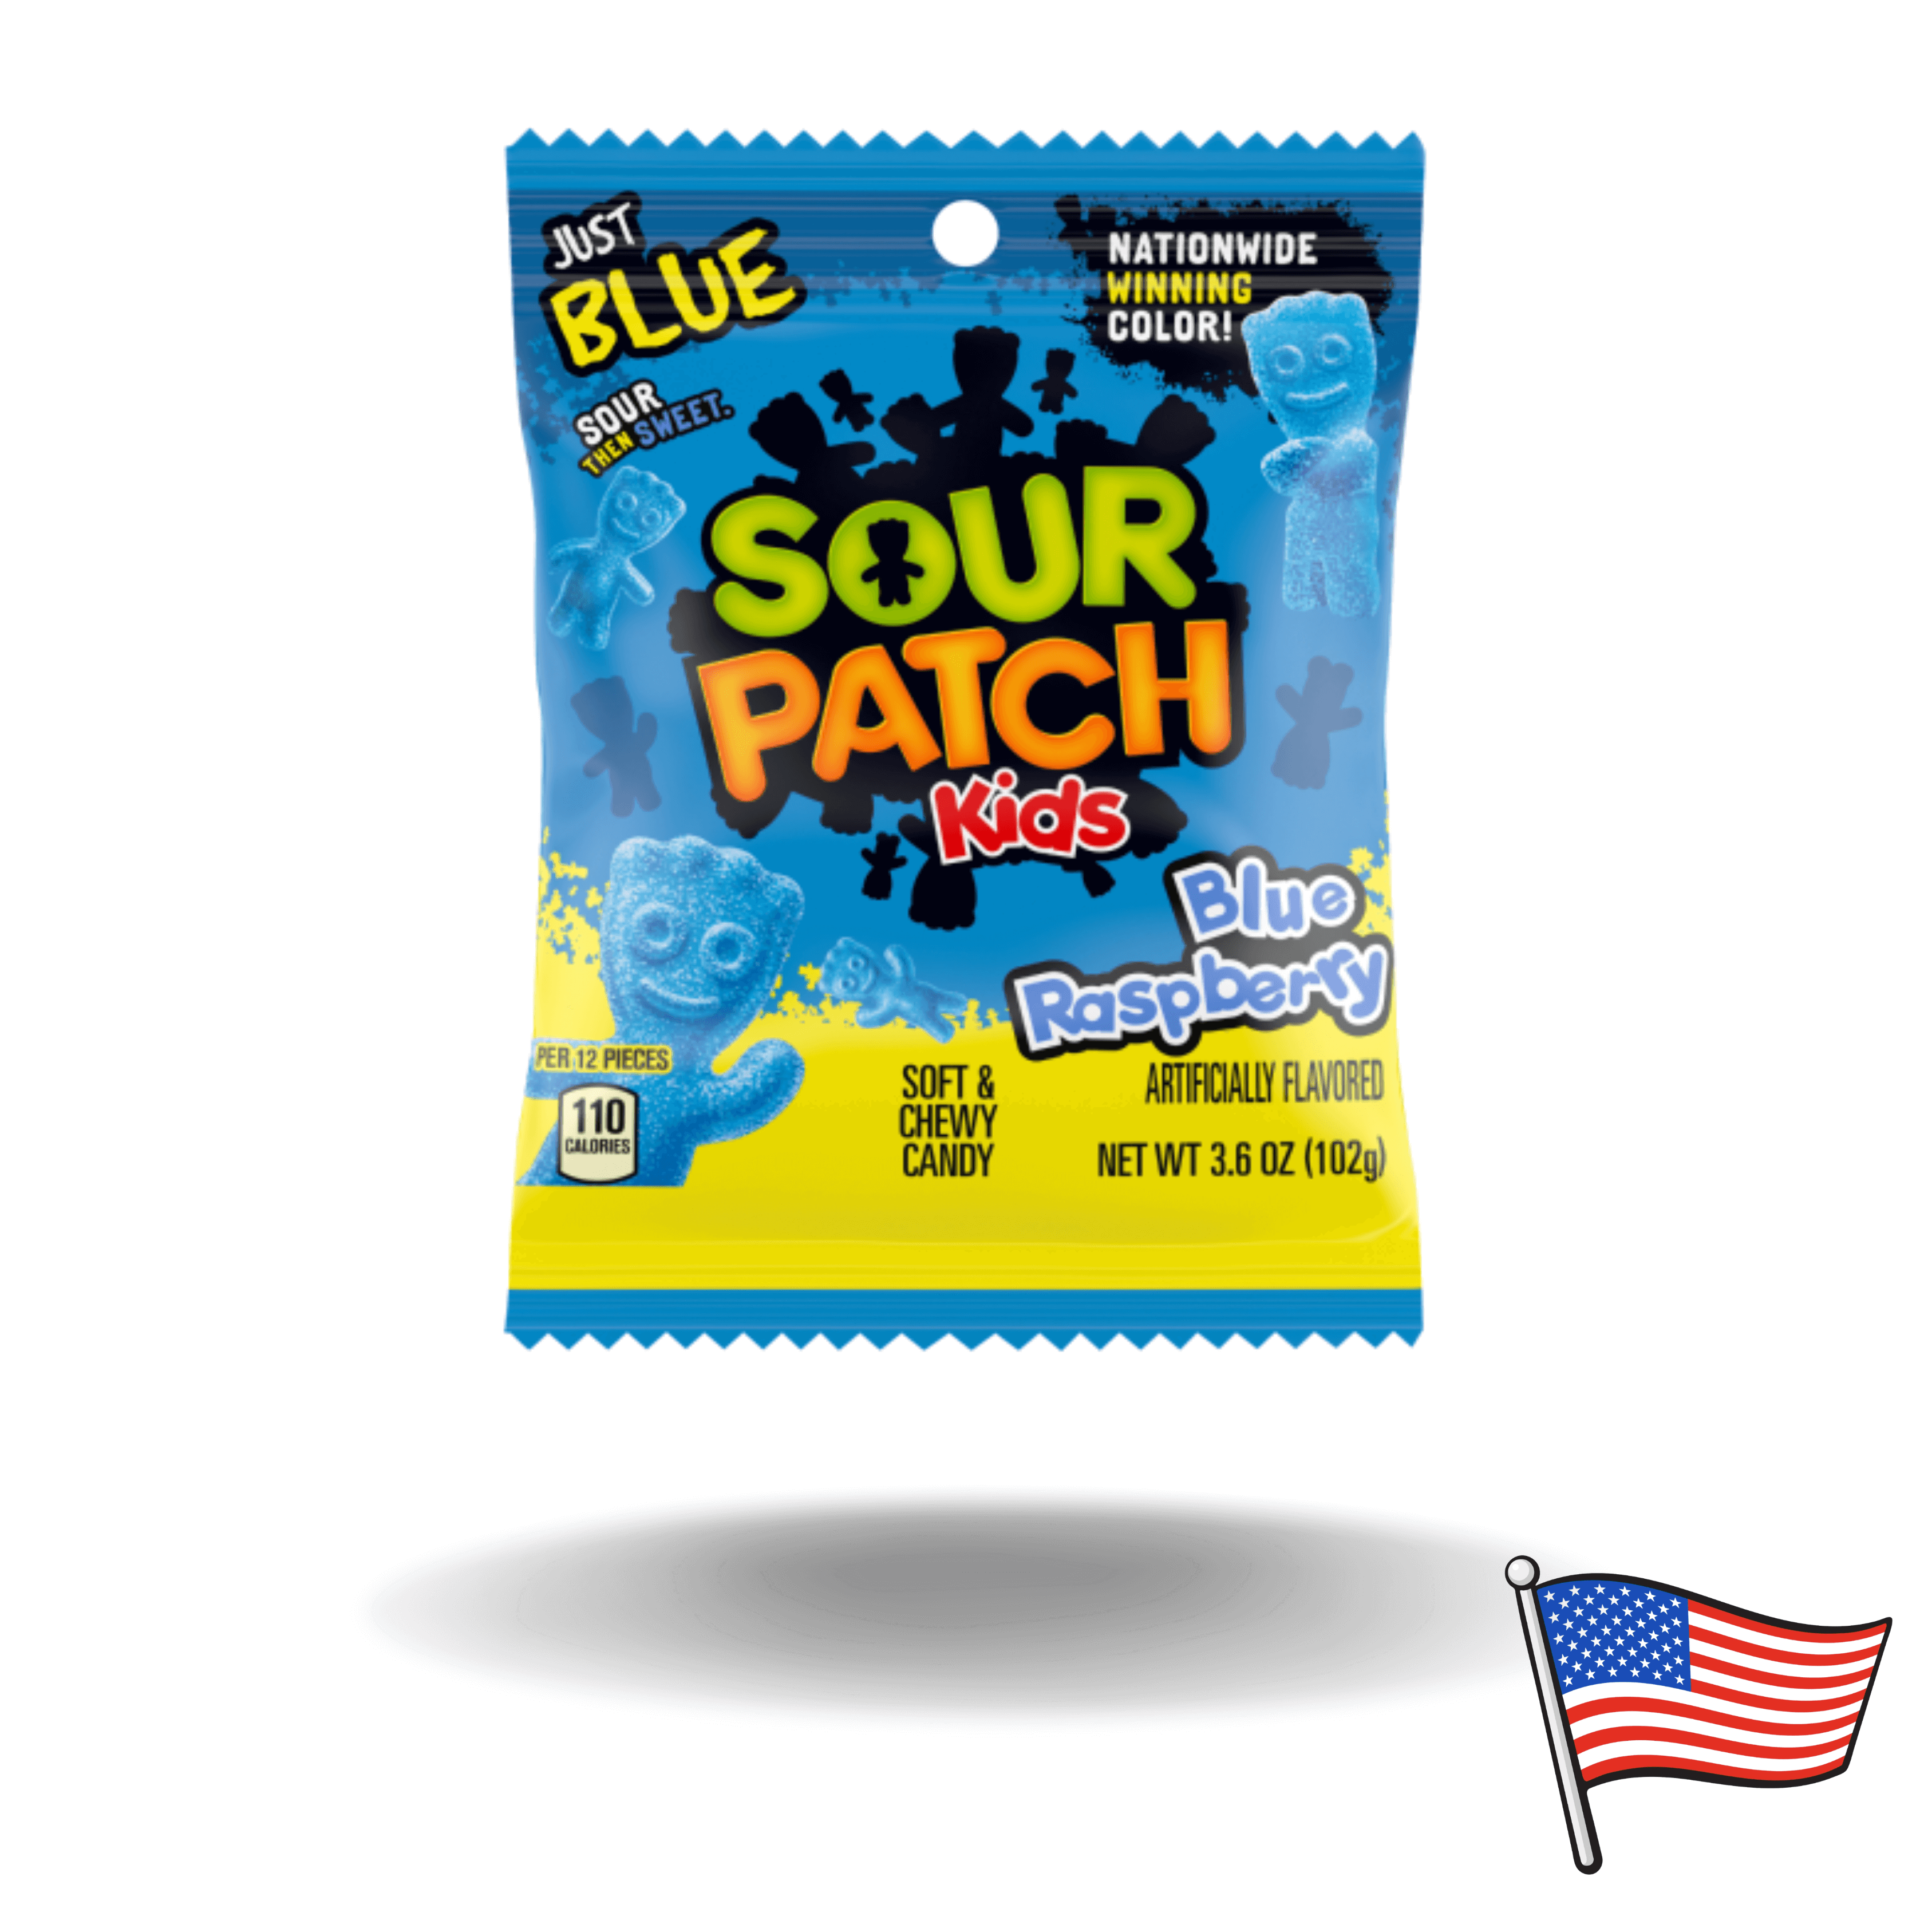 Sour Patch ist mittlerweile ein bekannter Name, da diese amerikanische Süßigkeit weltweit immer beliebter wird. Die sauren Fruchtgummis fallen nicht nur durch ihre erfrischende blaue Farbe auf, sondern auch durch den unglaublich leckeren Geschmack von blauen Himbeeren.